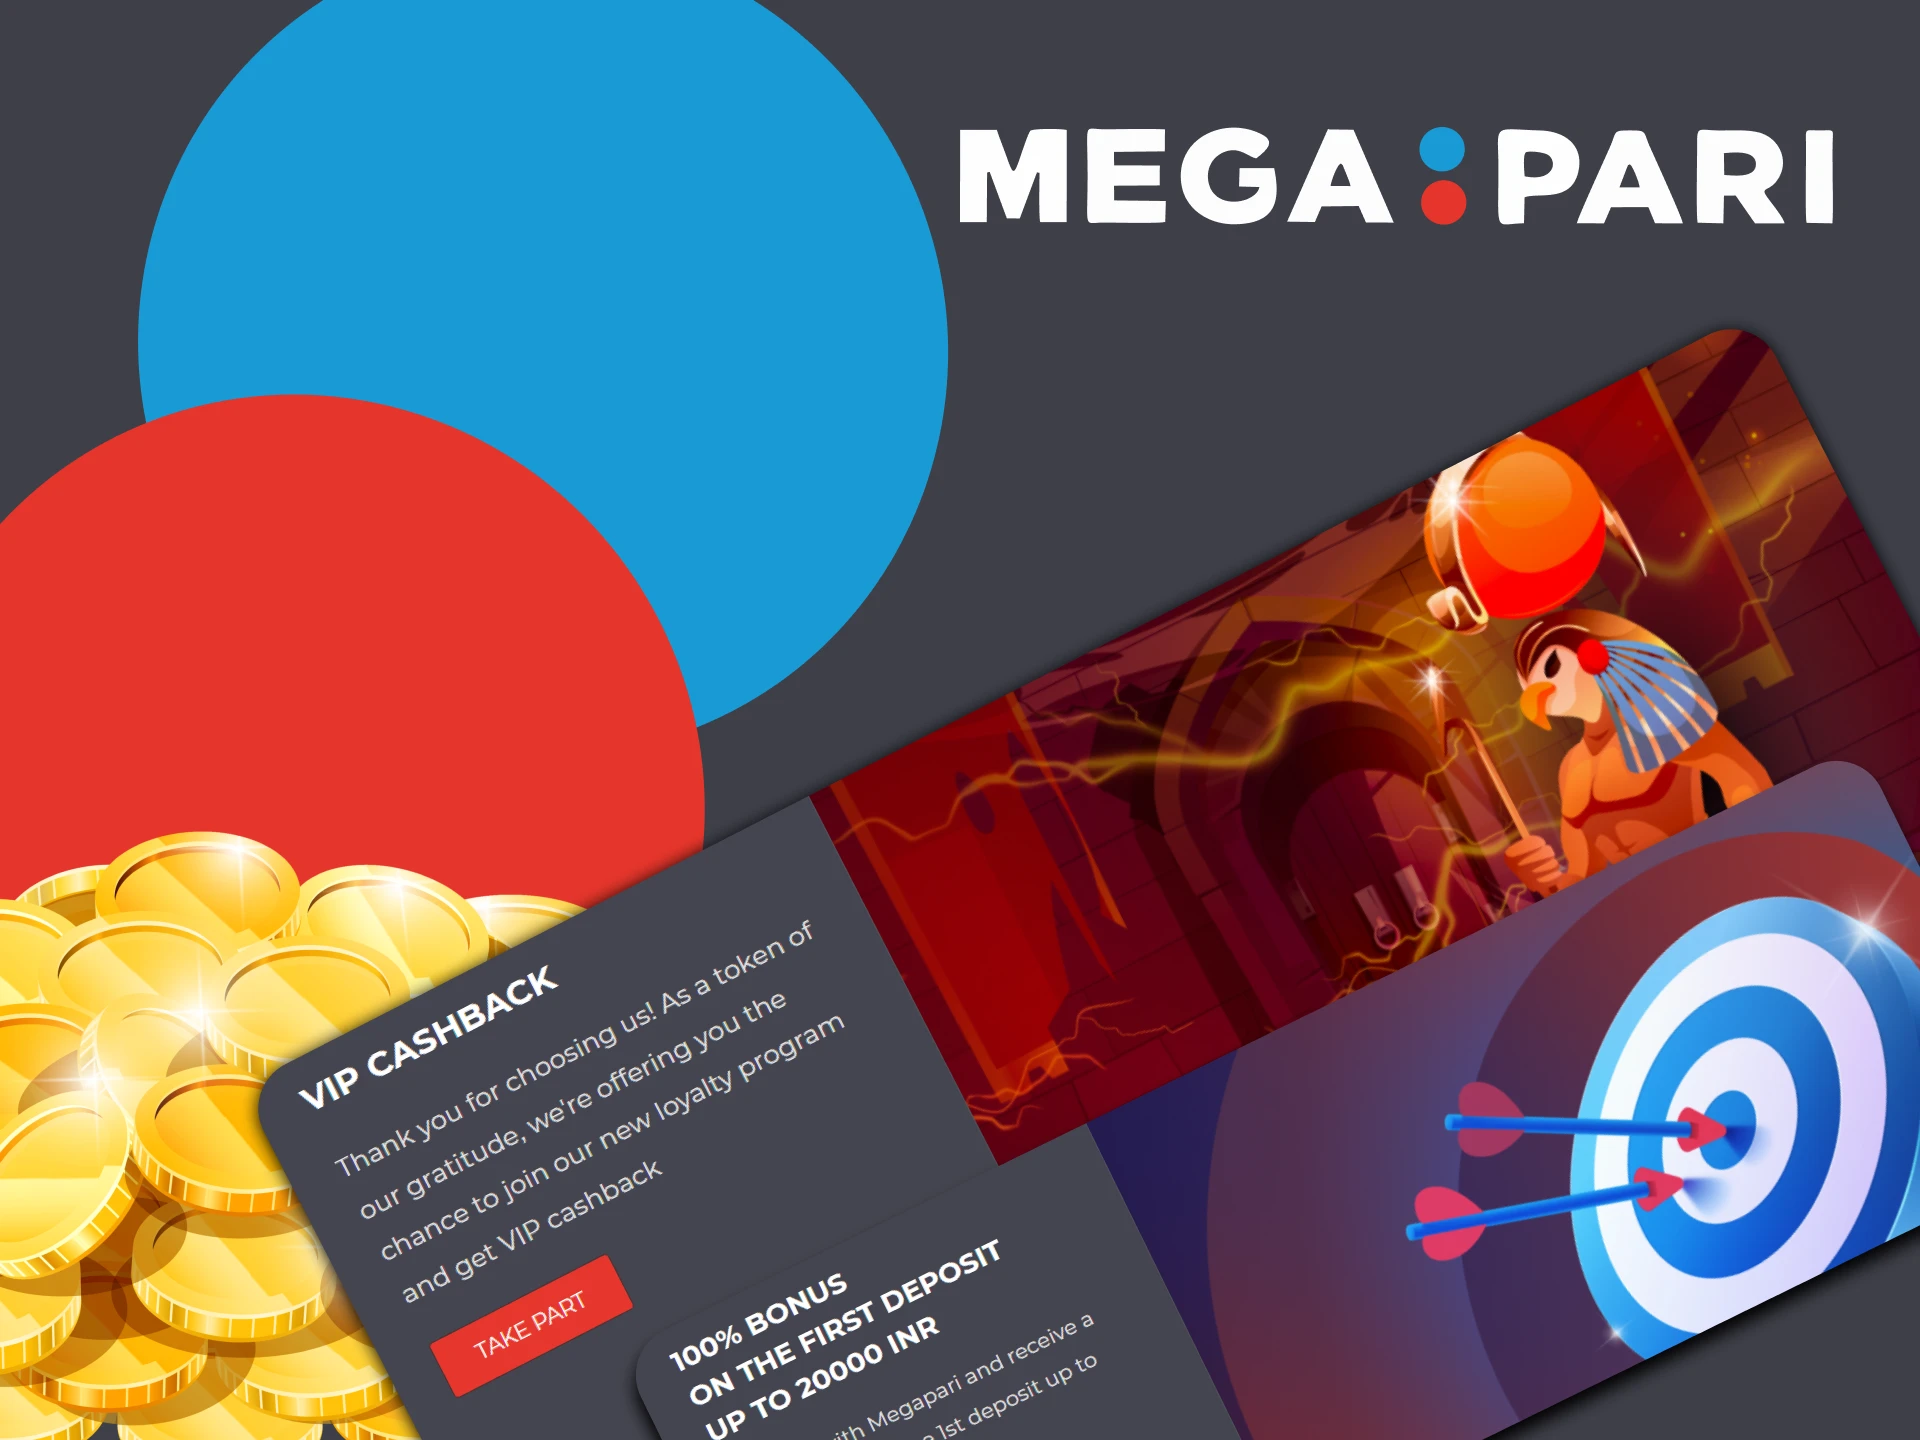 Get special bonuses from Megapari.